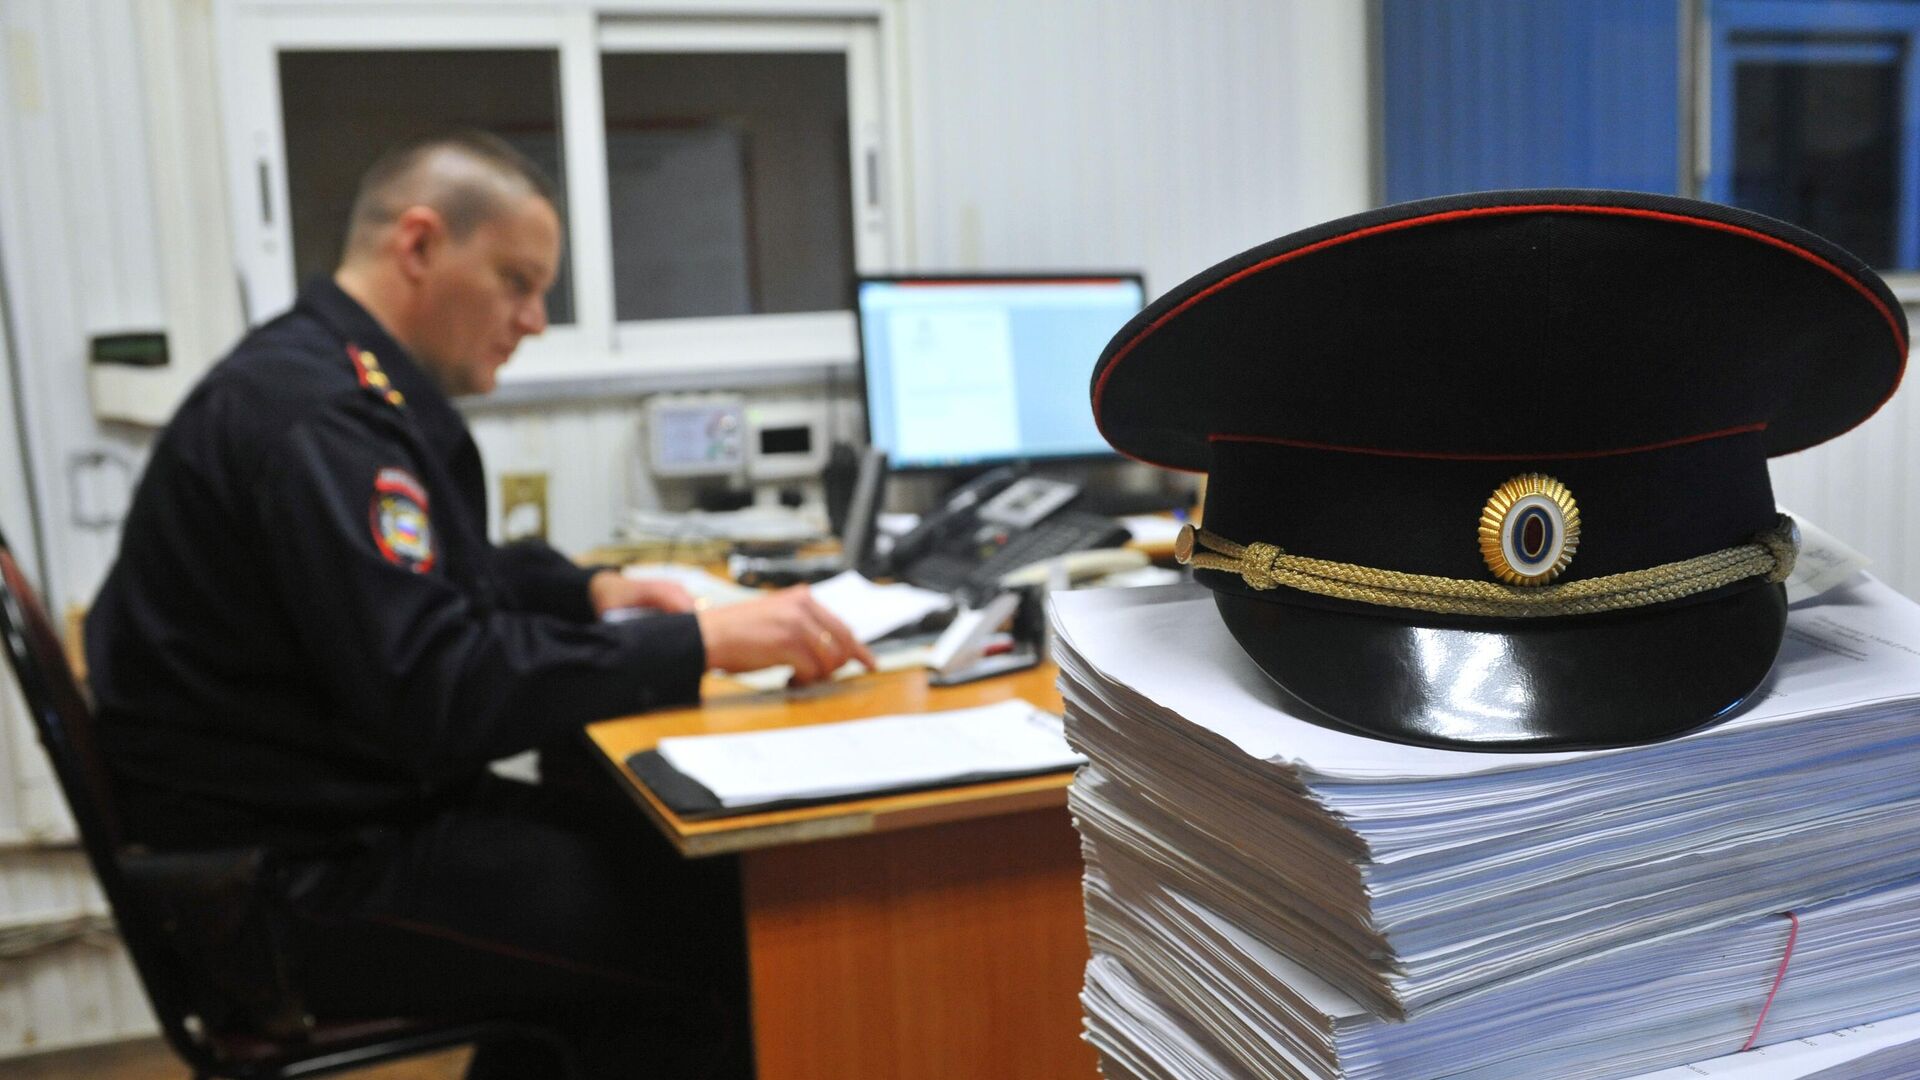 Сотрудник полиции во время заполнения документов - РИА Новости, 1920, 07.12.2020